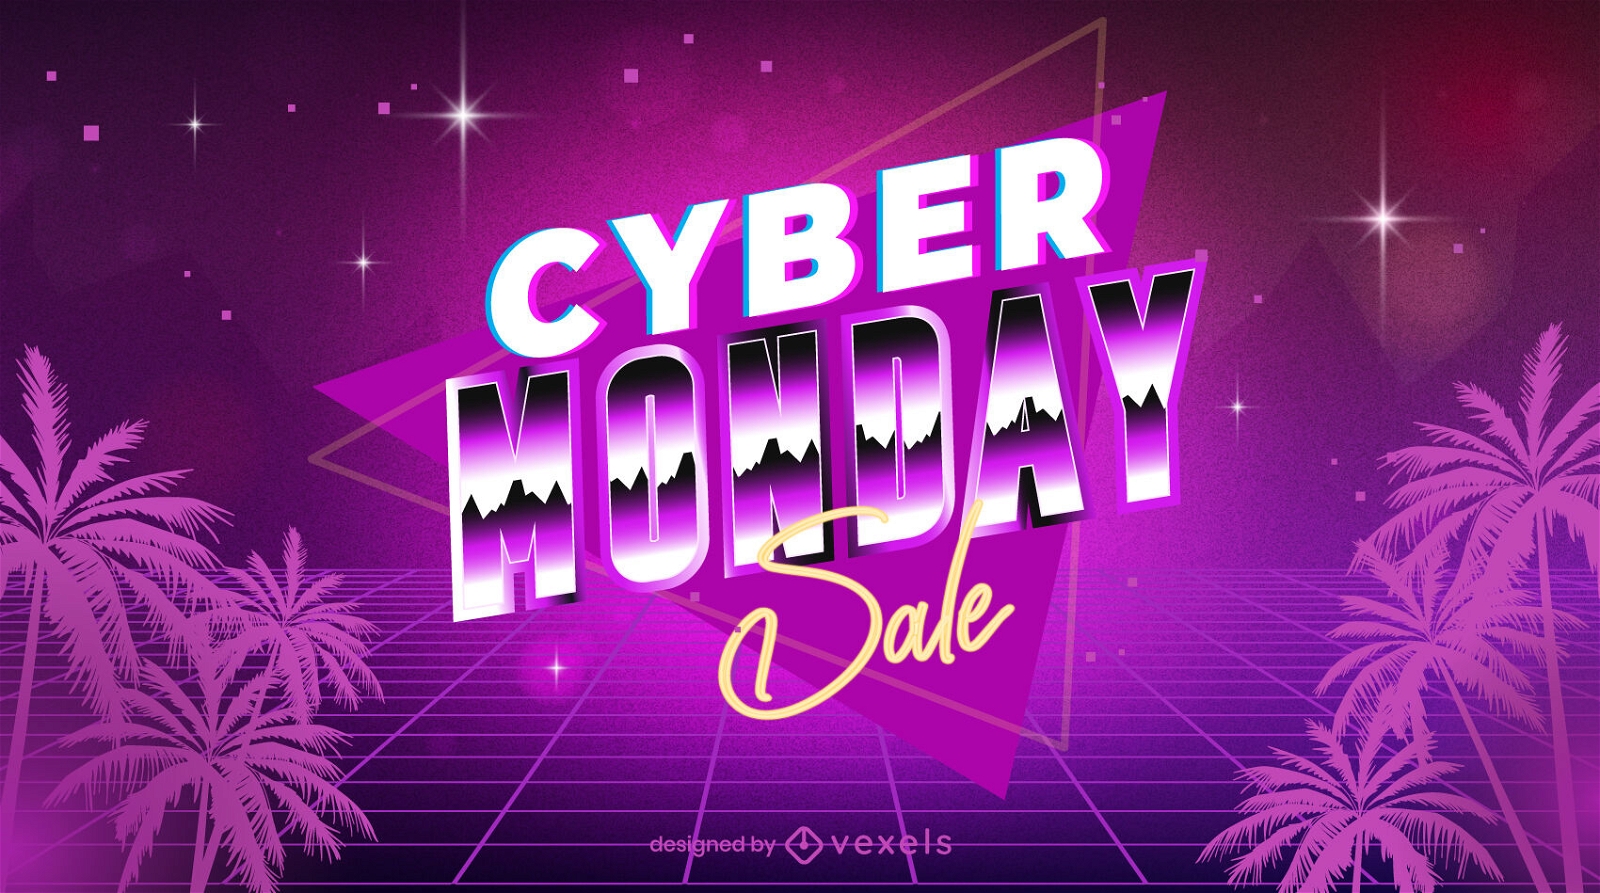 Illustrationsdesign für den Cyber Monday-Verkauf